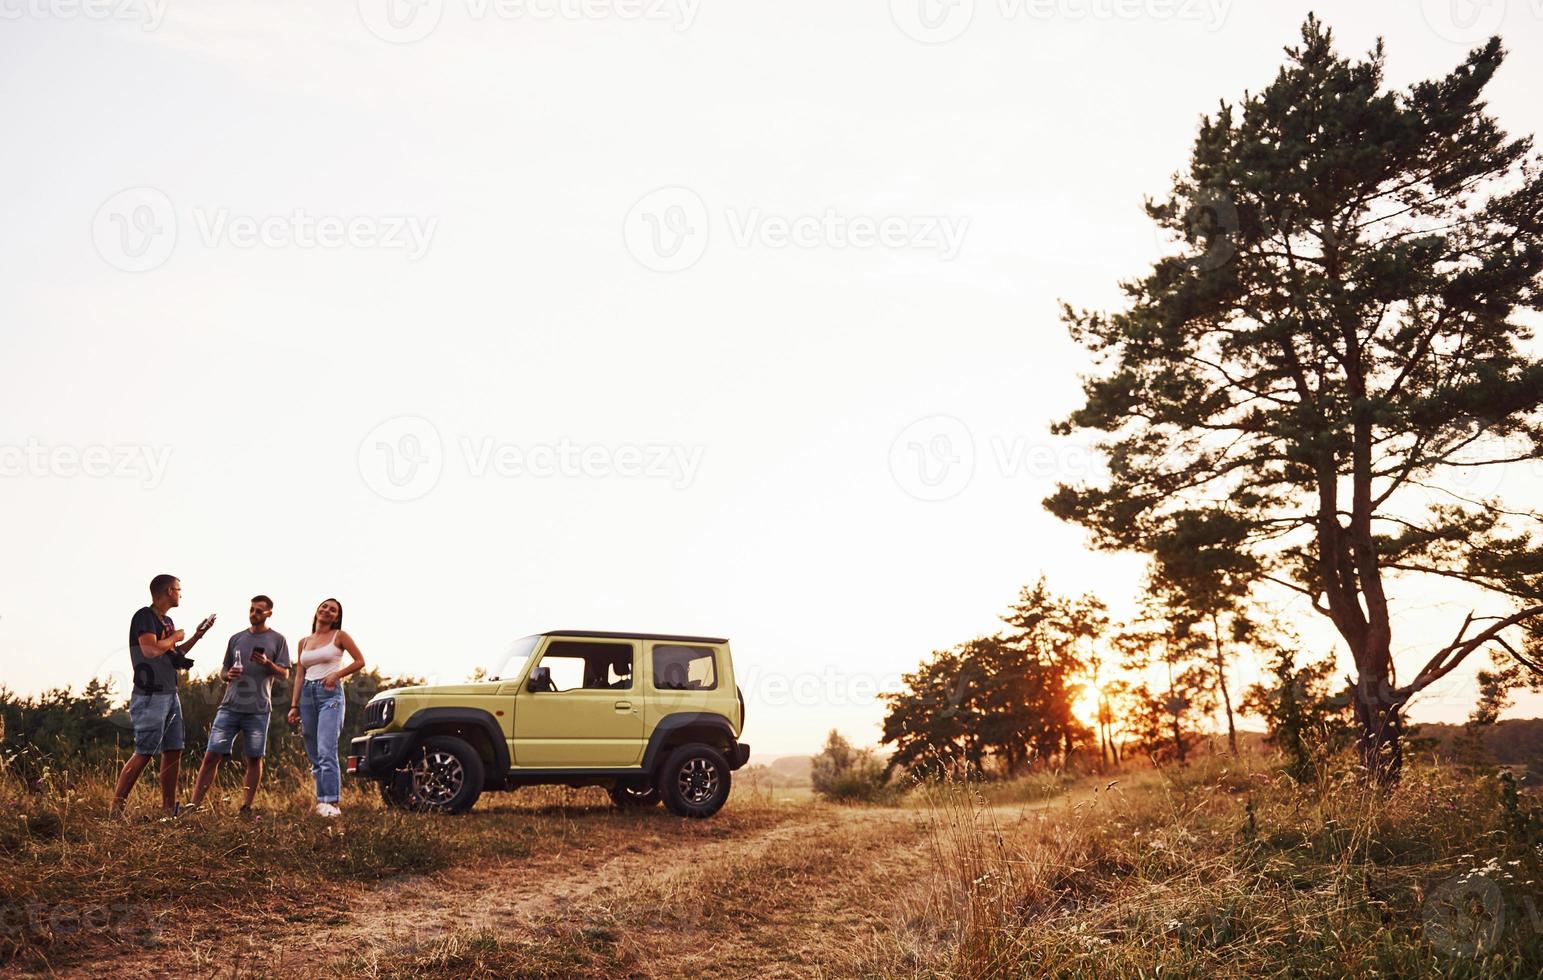 escena rural. grupo de amigos alegres que tengan un buen fin de semana en un día soleado cerca de su auto verde al aire libre foto